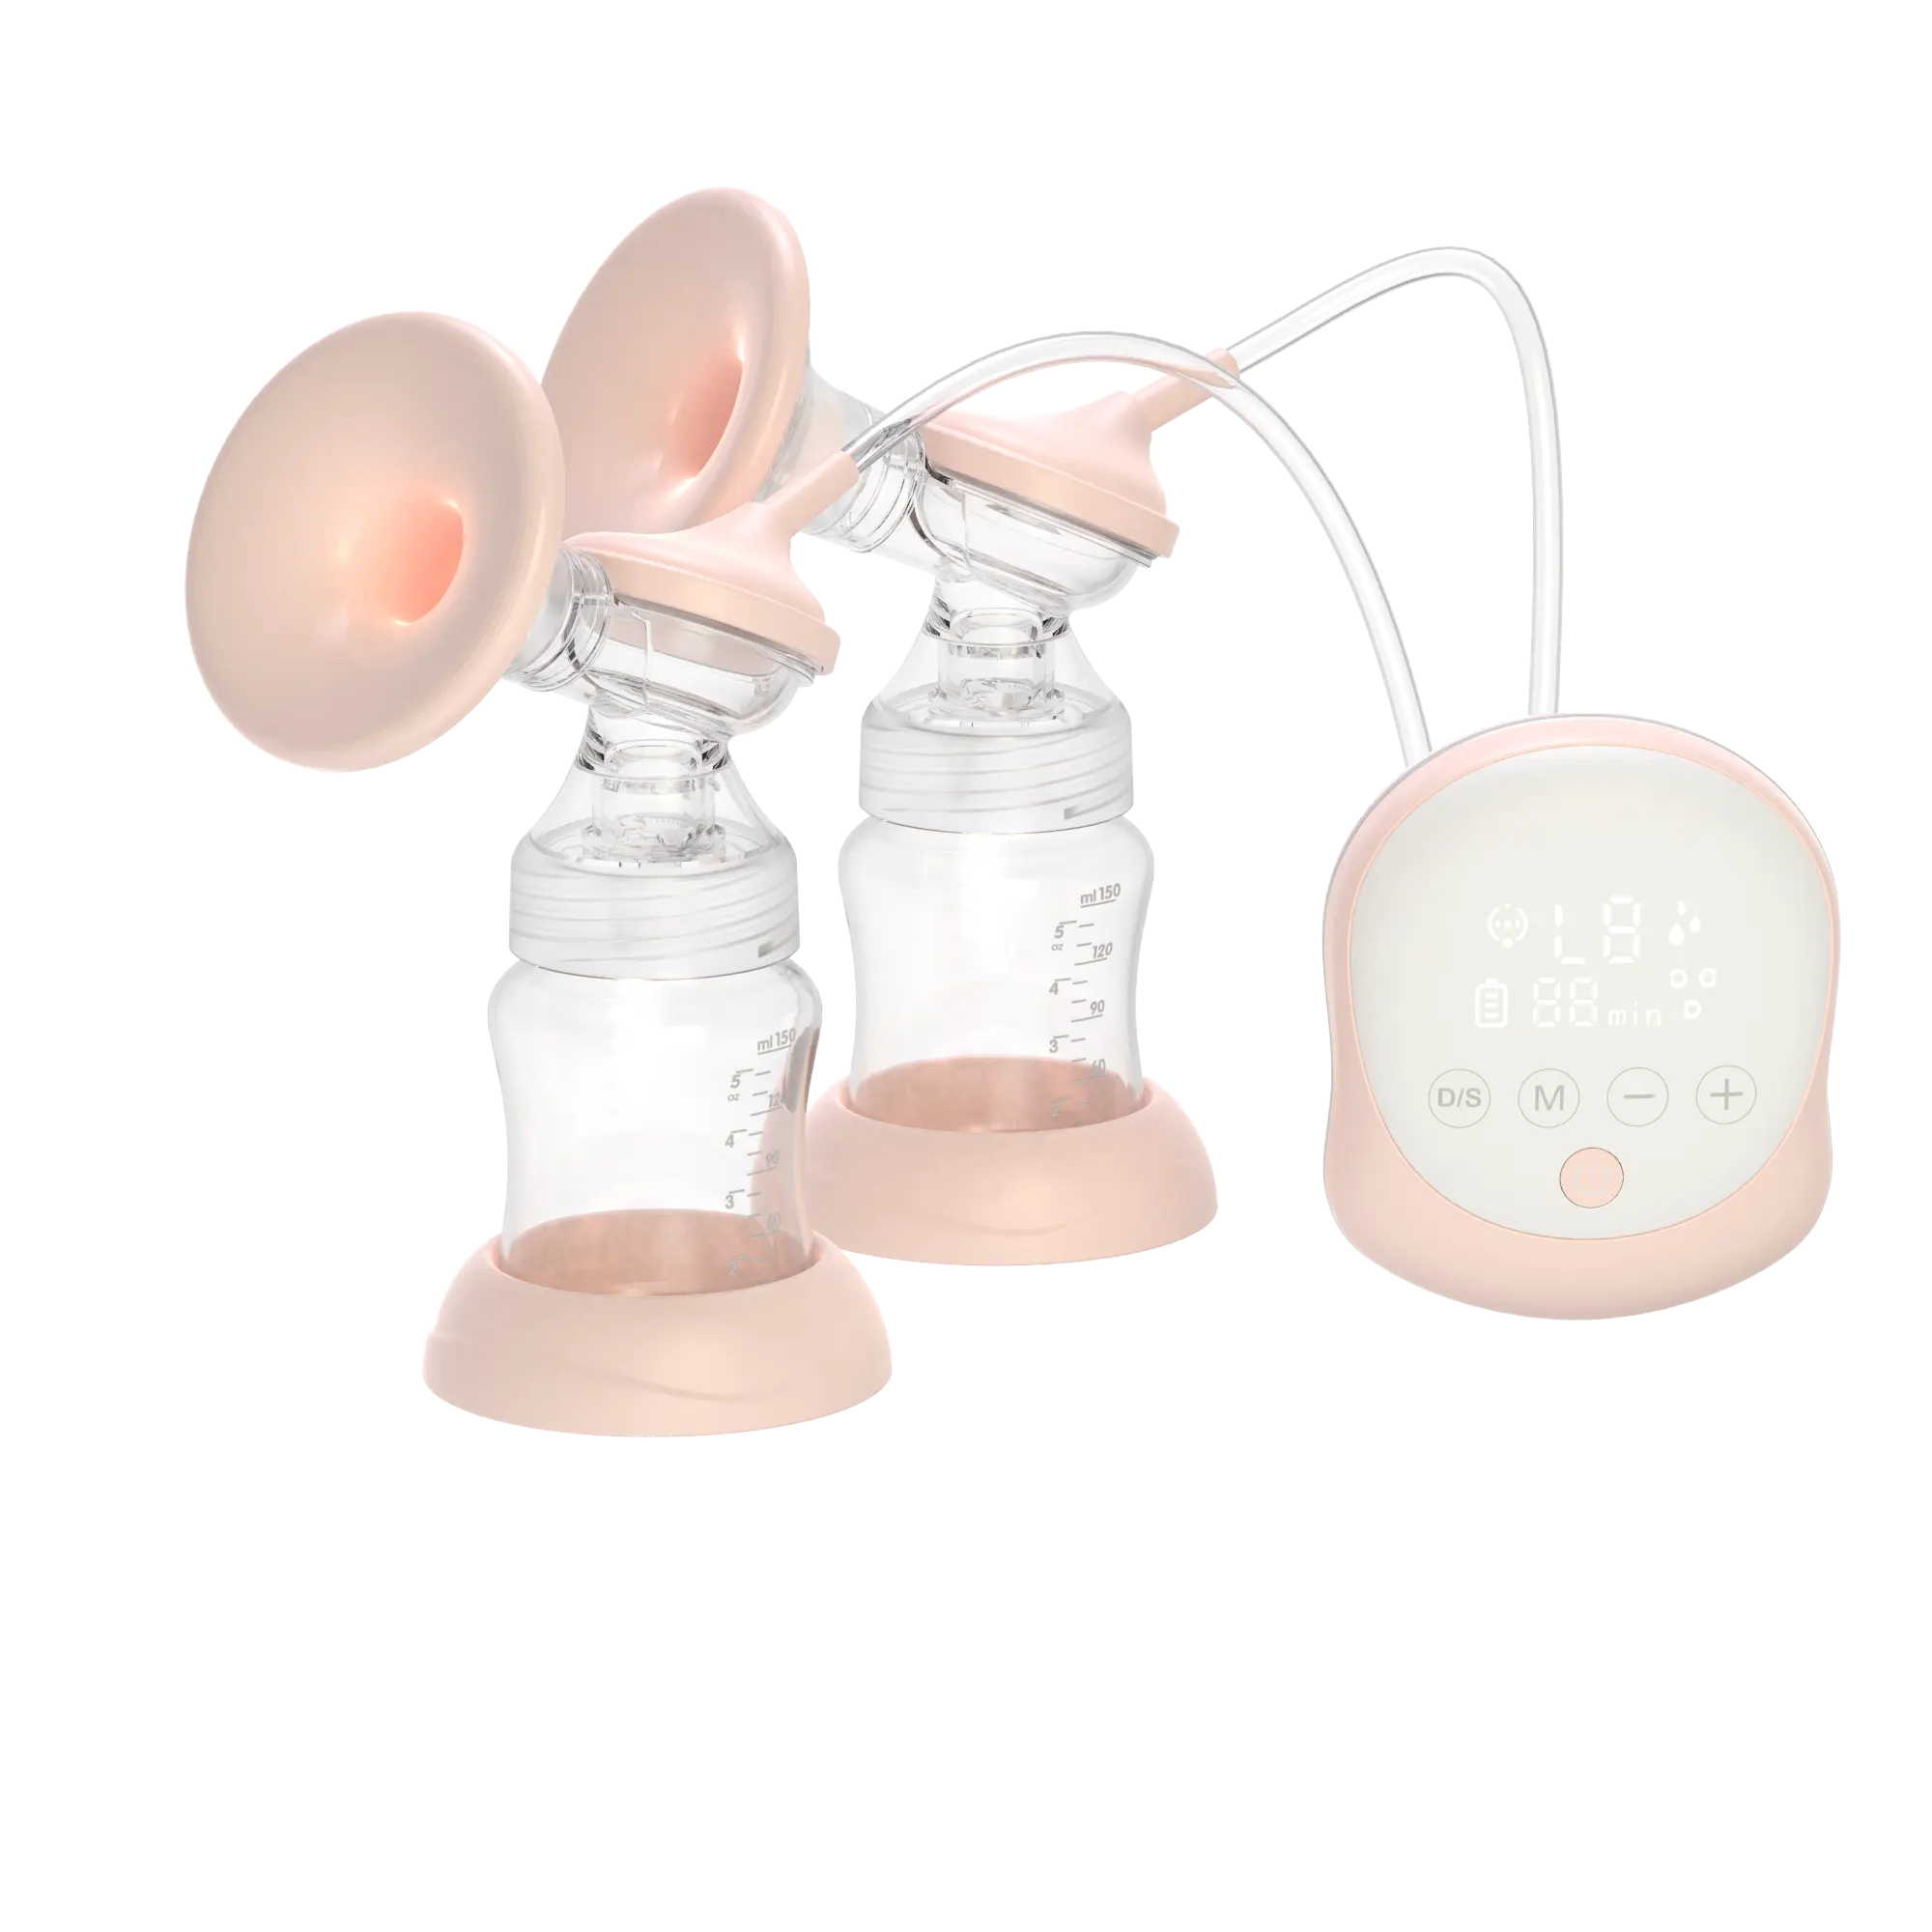 Двухсторонний молокоотсос, Электрический молокоотсос для матери, подлинный бесшумный автоматический умный молокоотсос для женщин